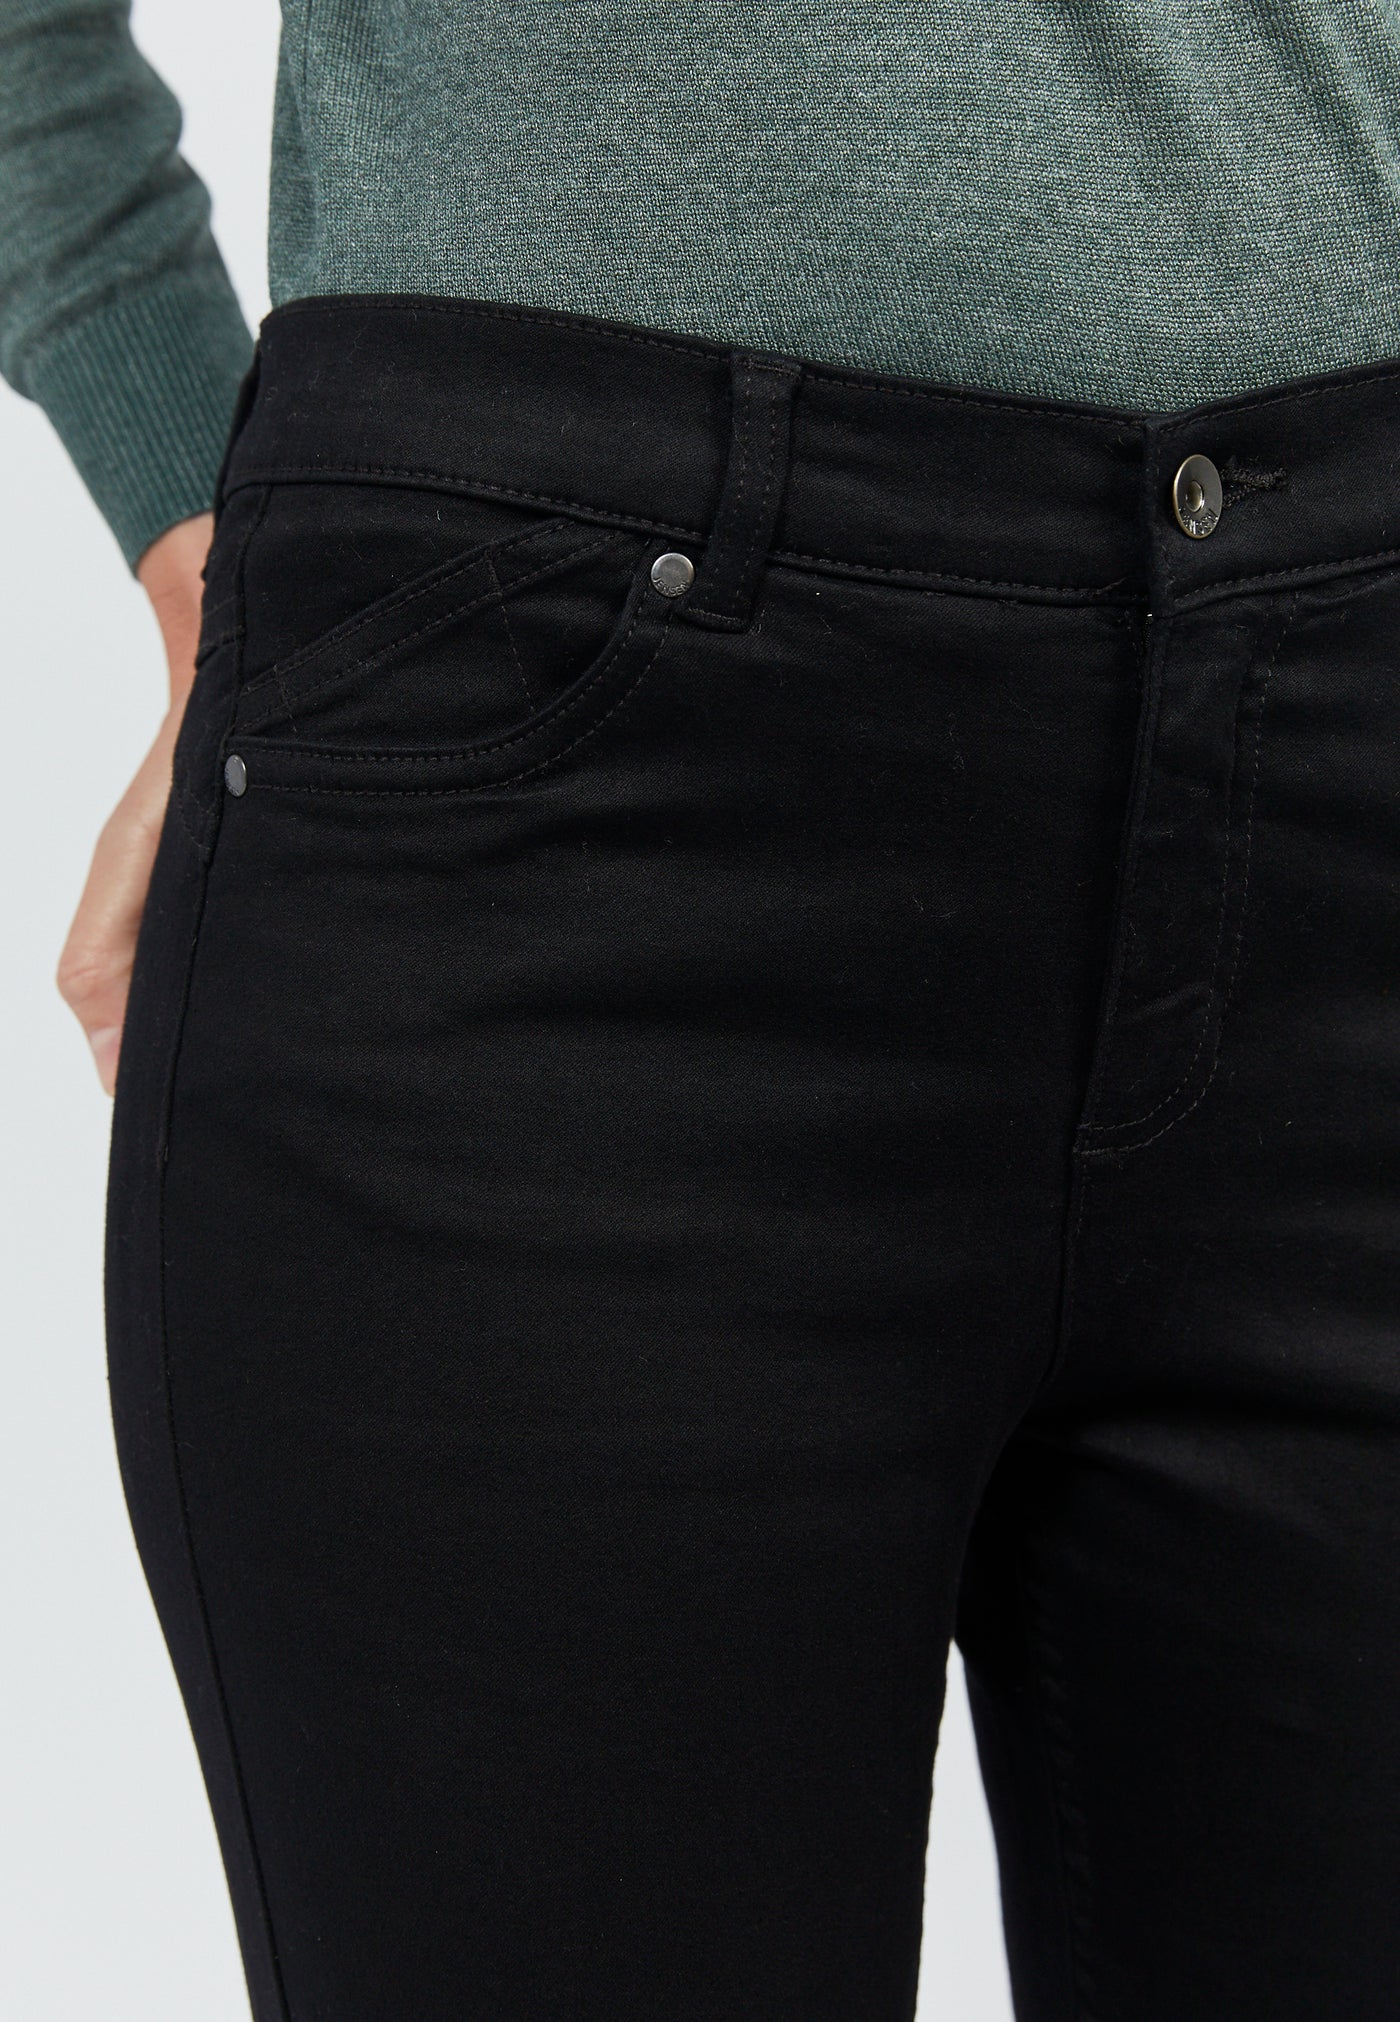 Jeans, Model Jill - Black tone in tone